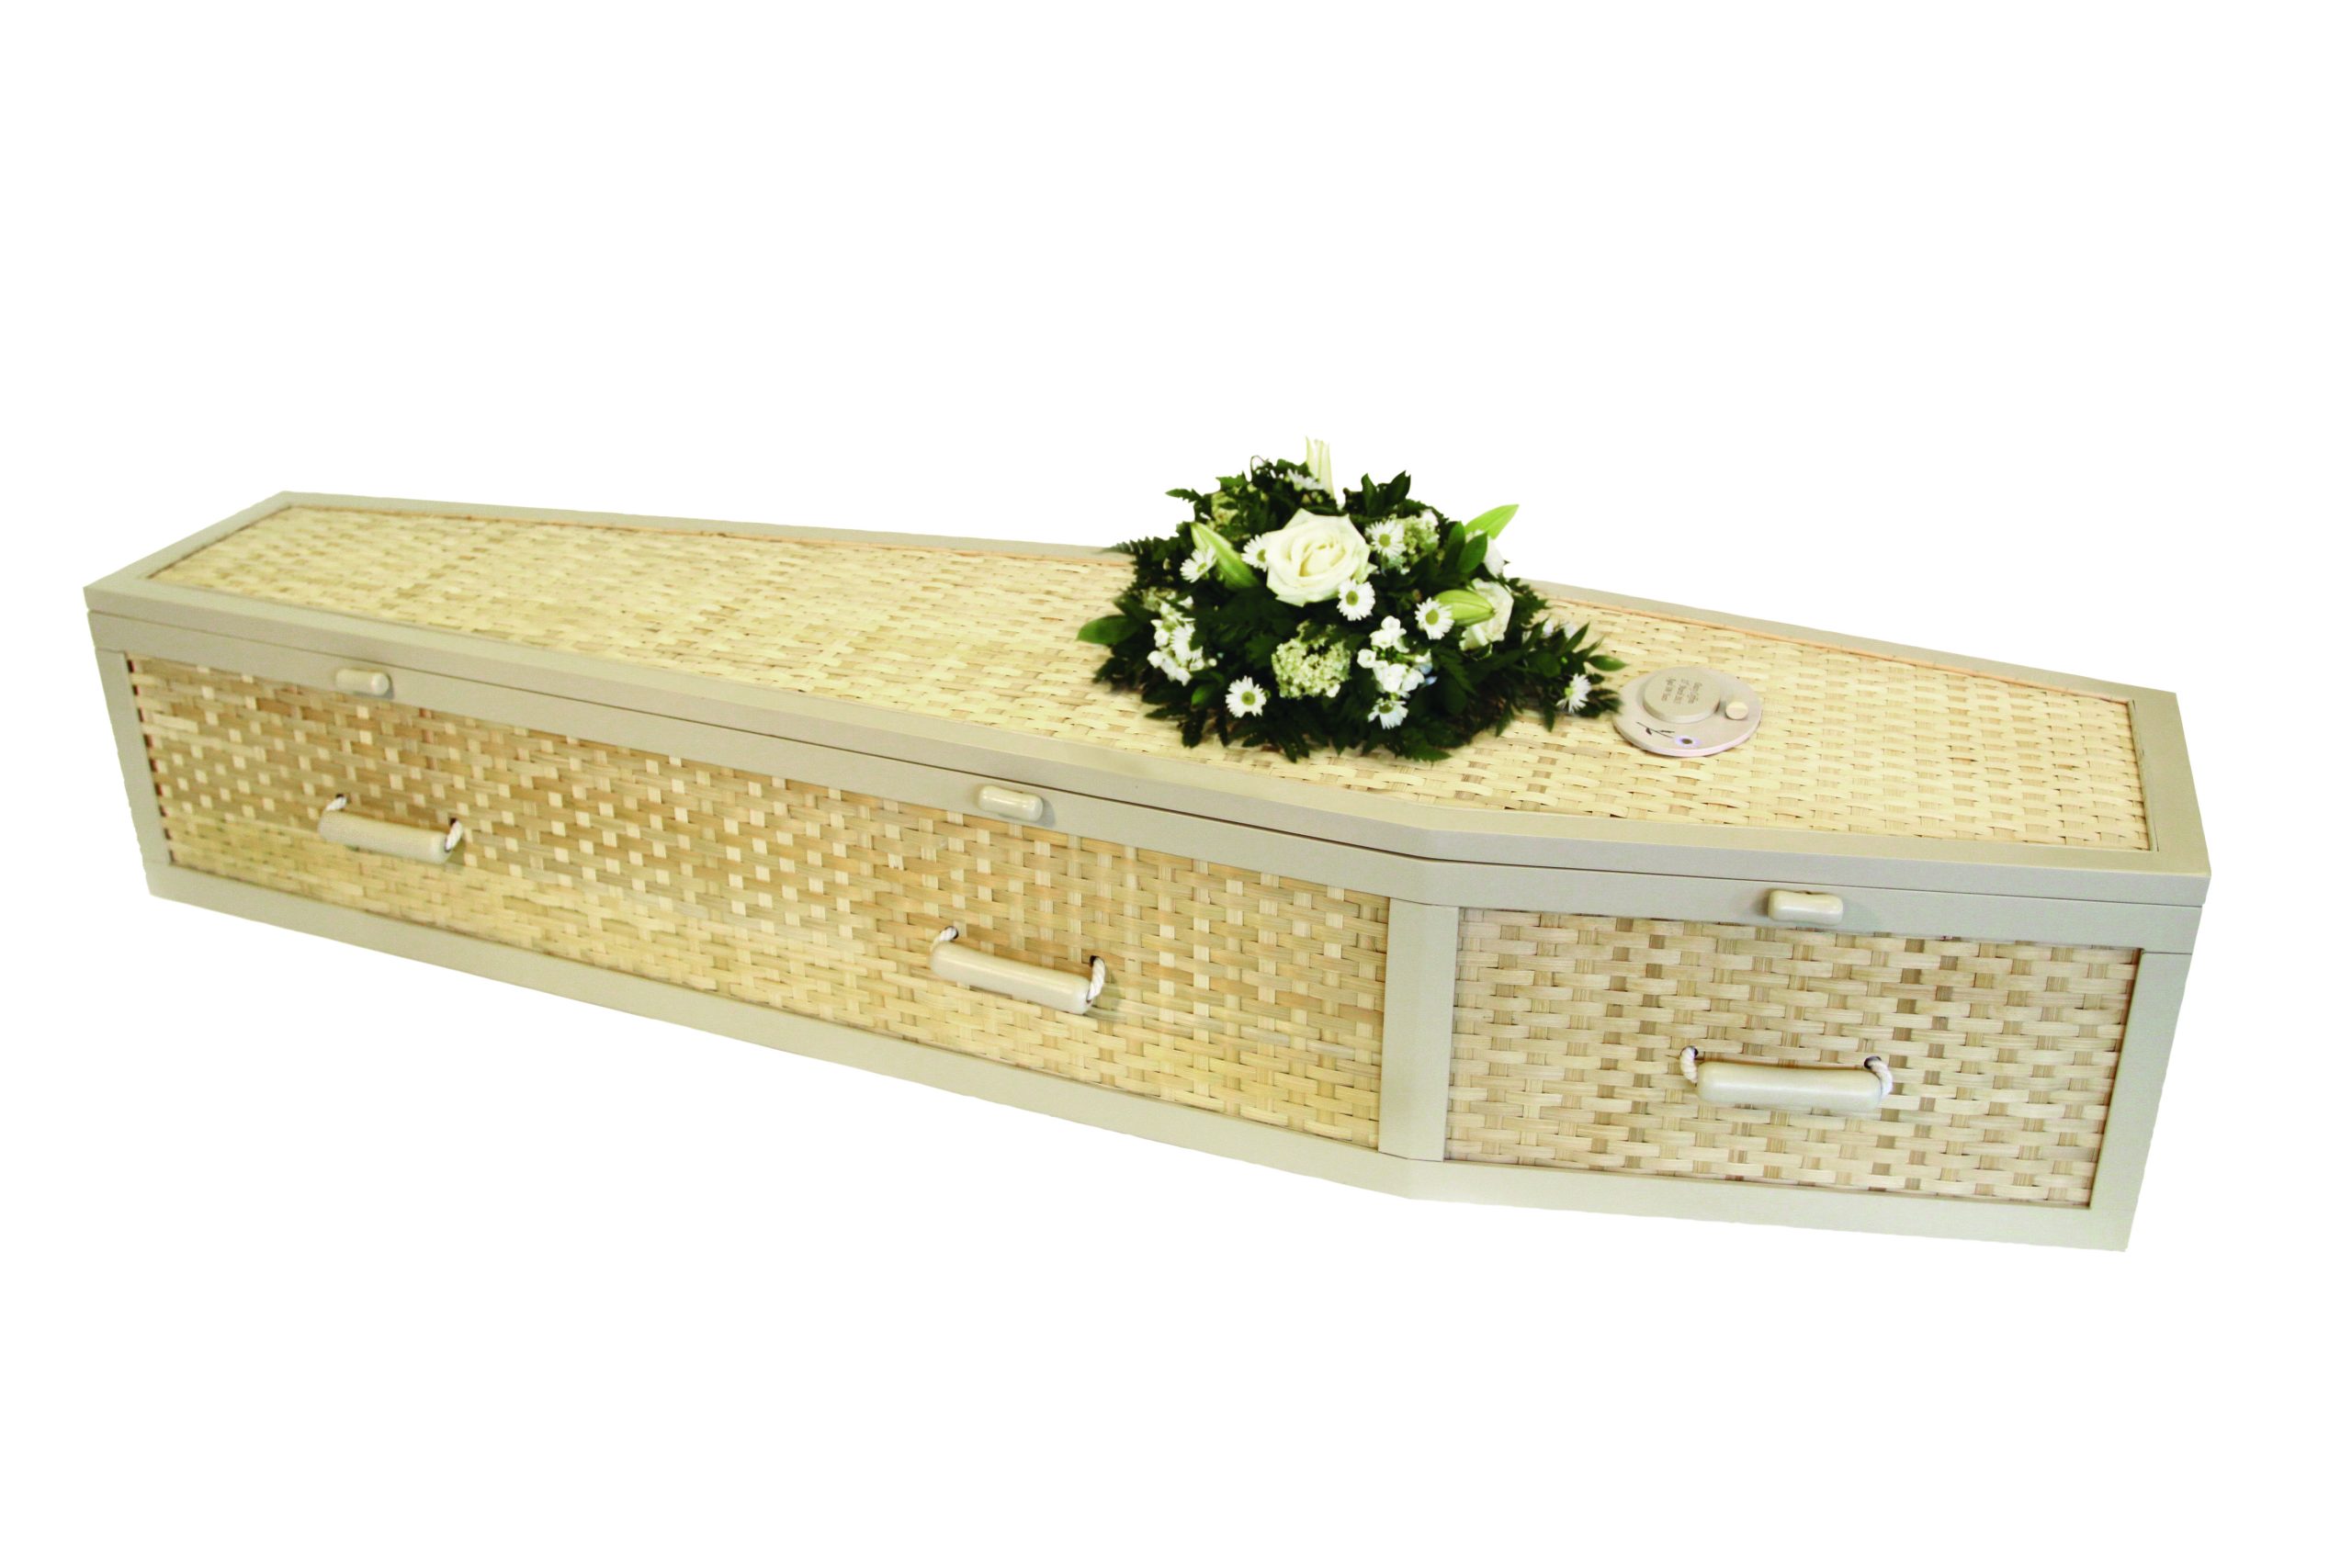 //middletonandwood.co.uk/wp-content/uploads/2022/07/daisy-bamboo-coffin-scaled.jpg